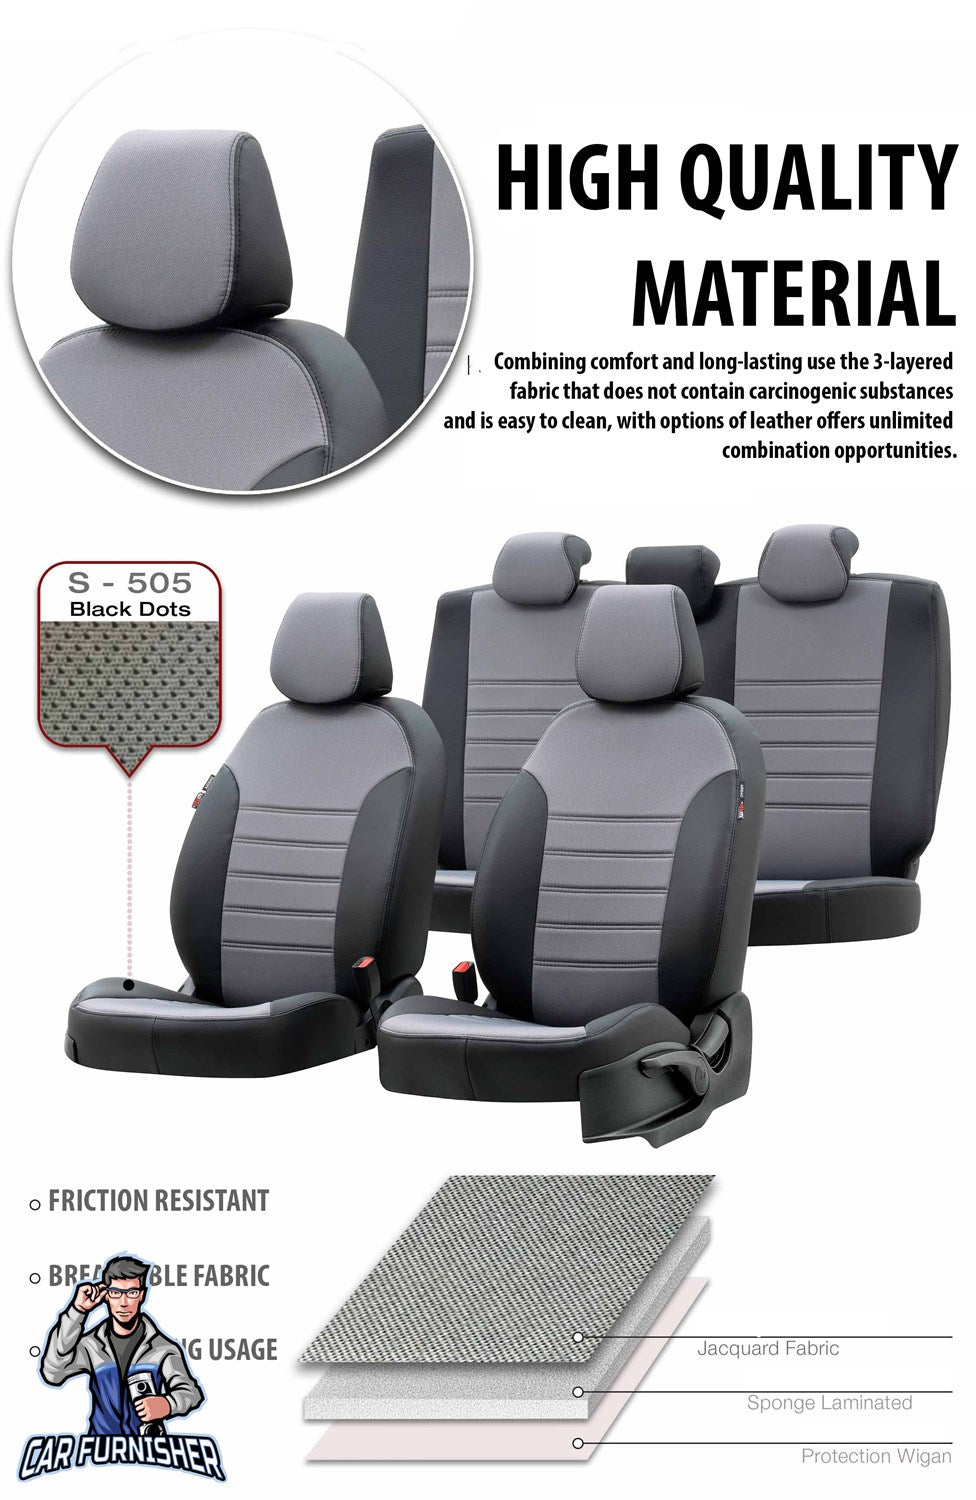 Fiat Fiorino Car Seat Covers 2008-2020 Paris Design Red Full Set (5 Seats + Handrest) Leather & Fabric